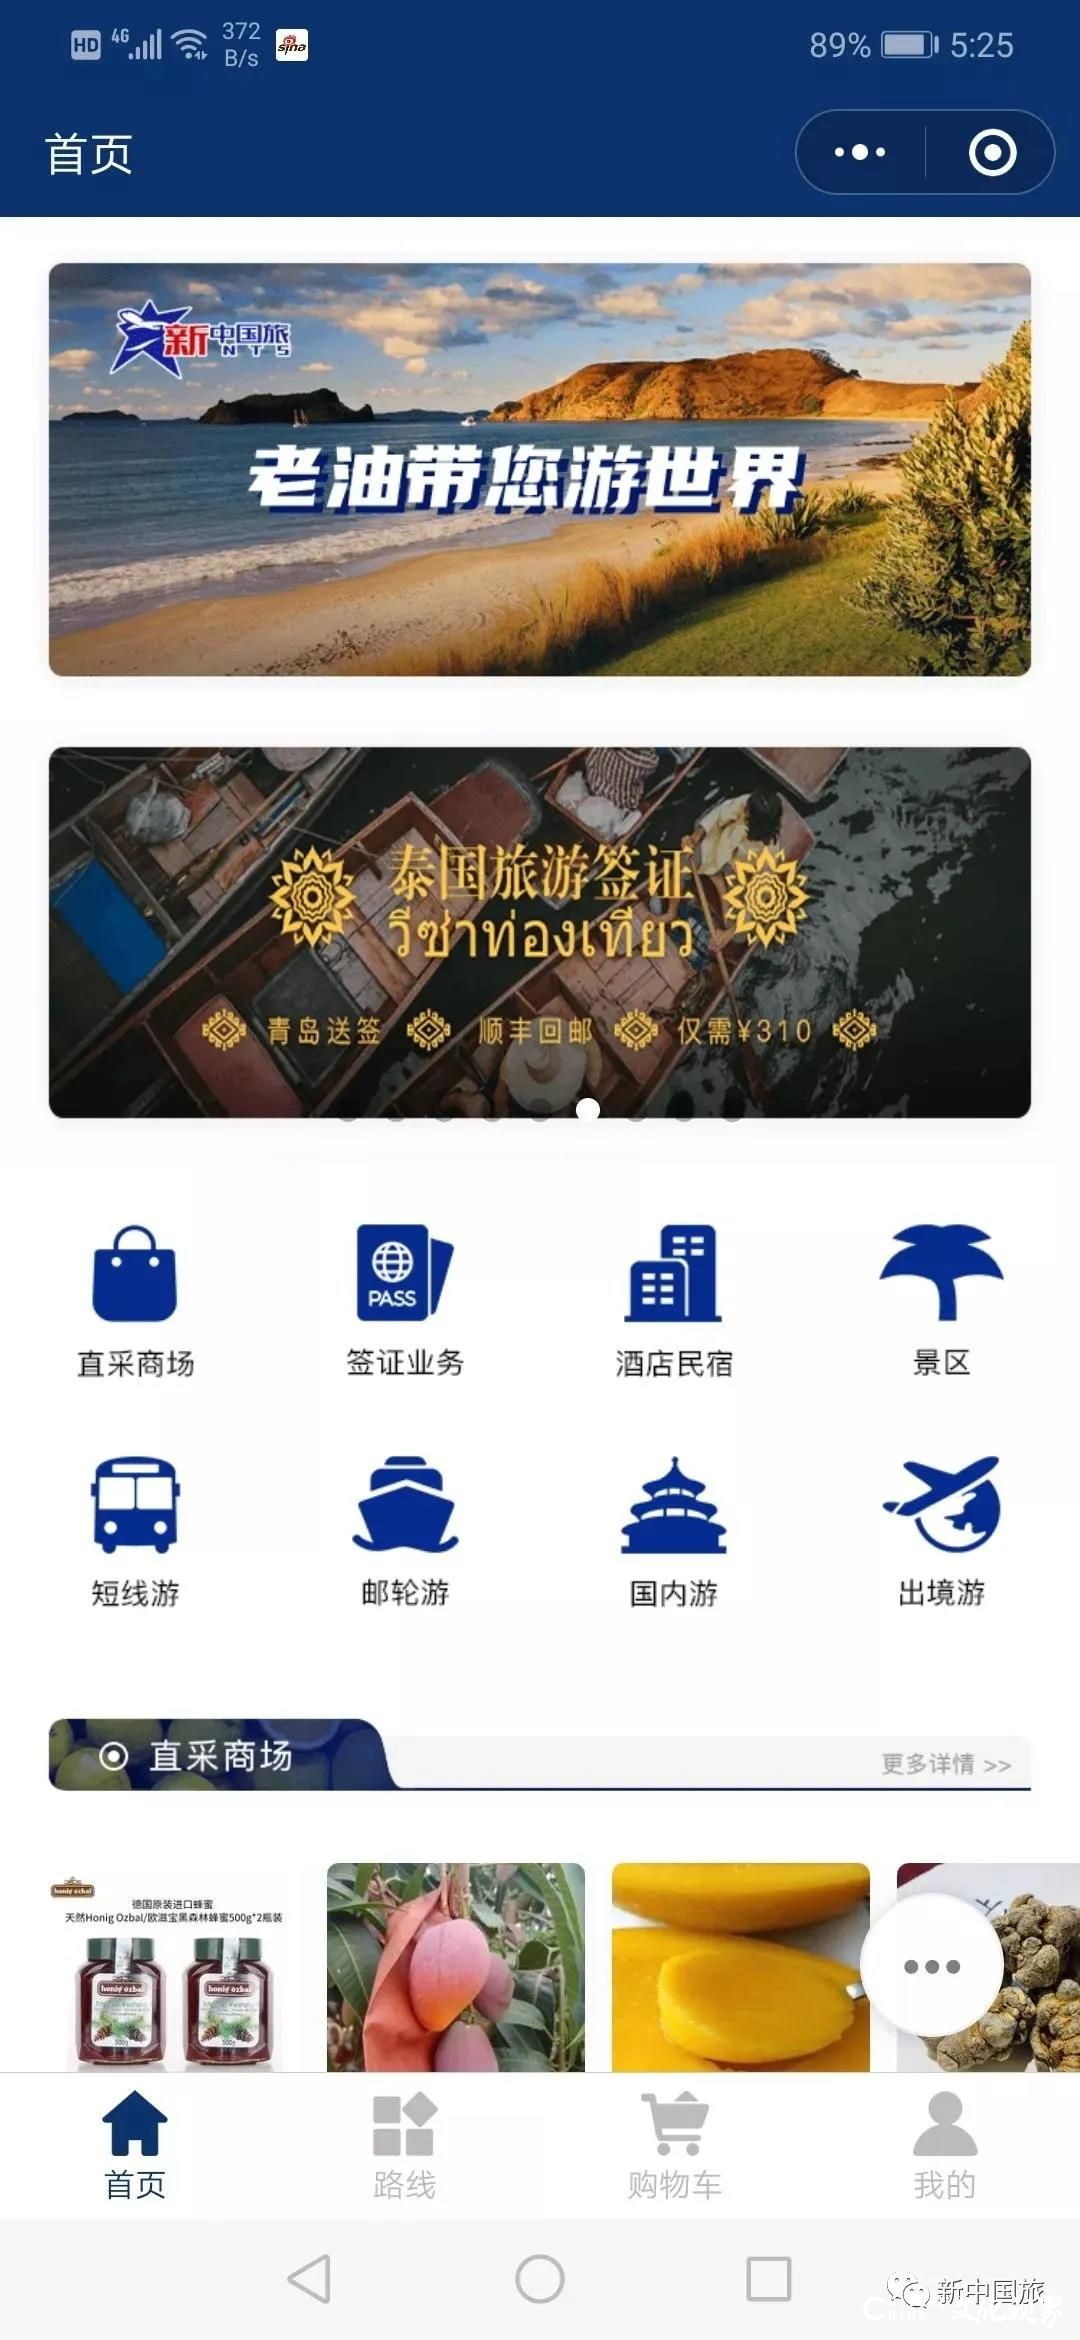 新中国旅|“新中生活家”——旅游+旅游生活商品综合服务商